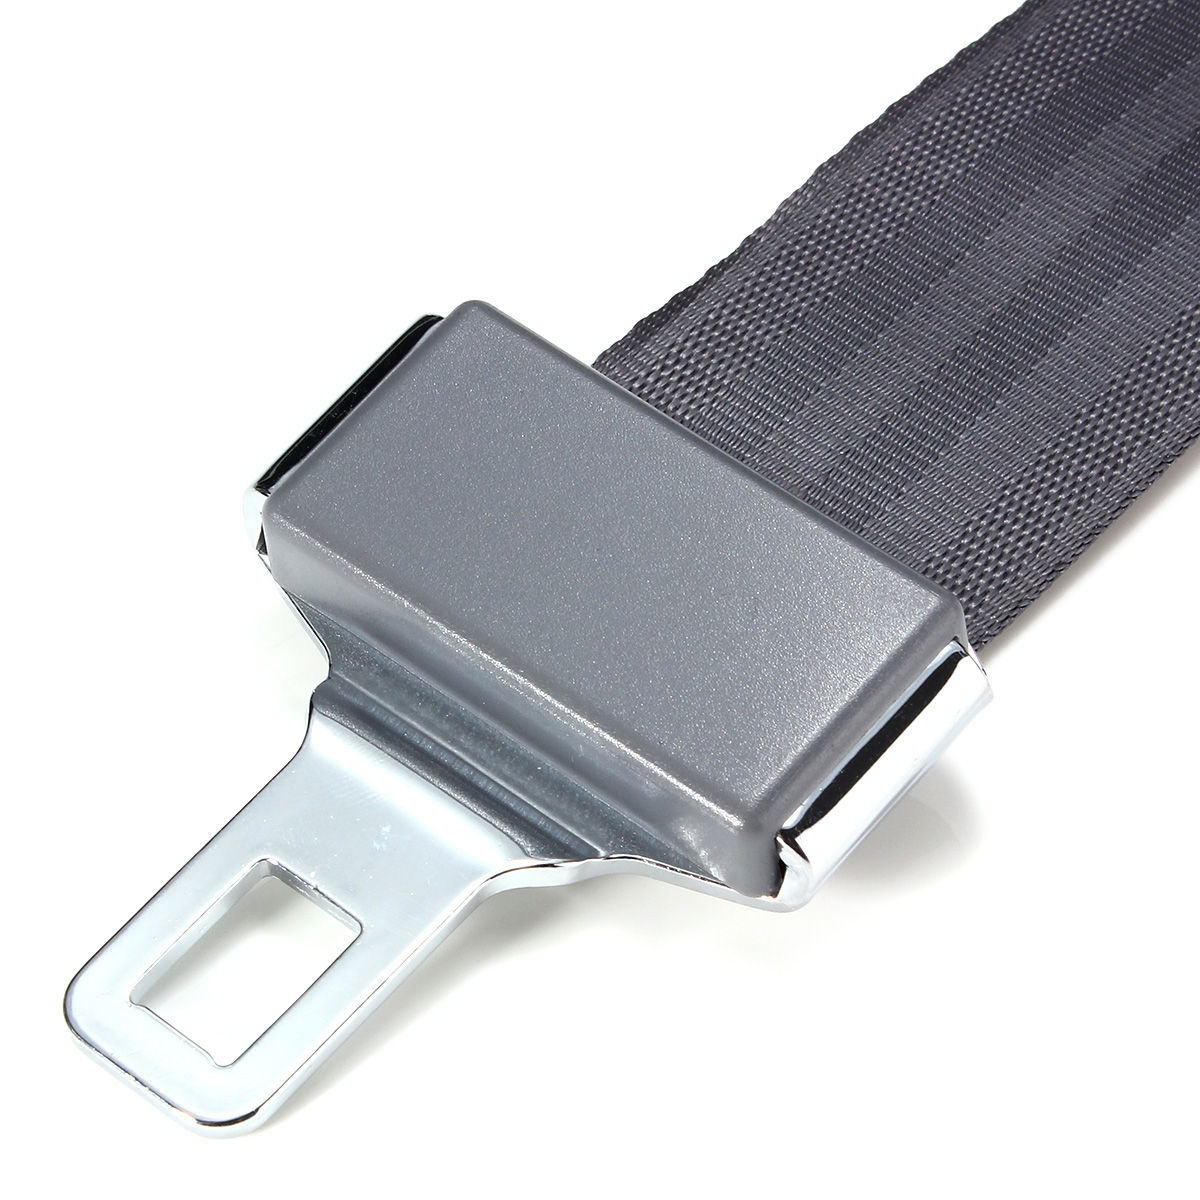 21cm-Universal-Adjustable-Car-Seat-Belt-Extension-Black-Seat-Belt-Extender-1404815